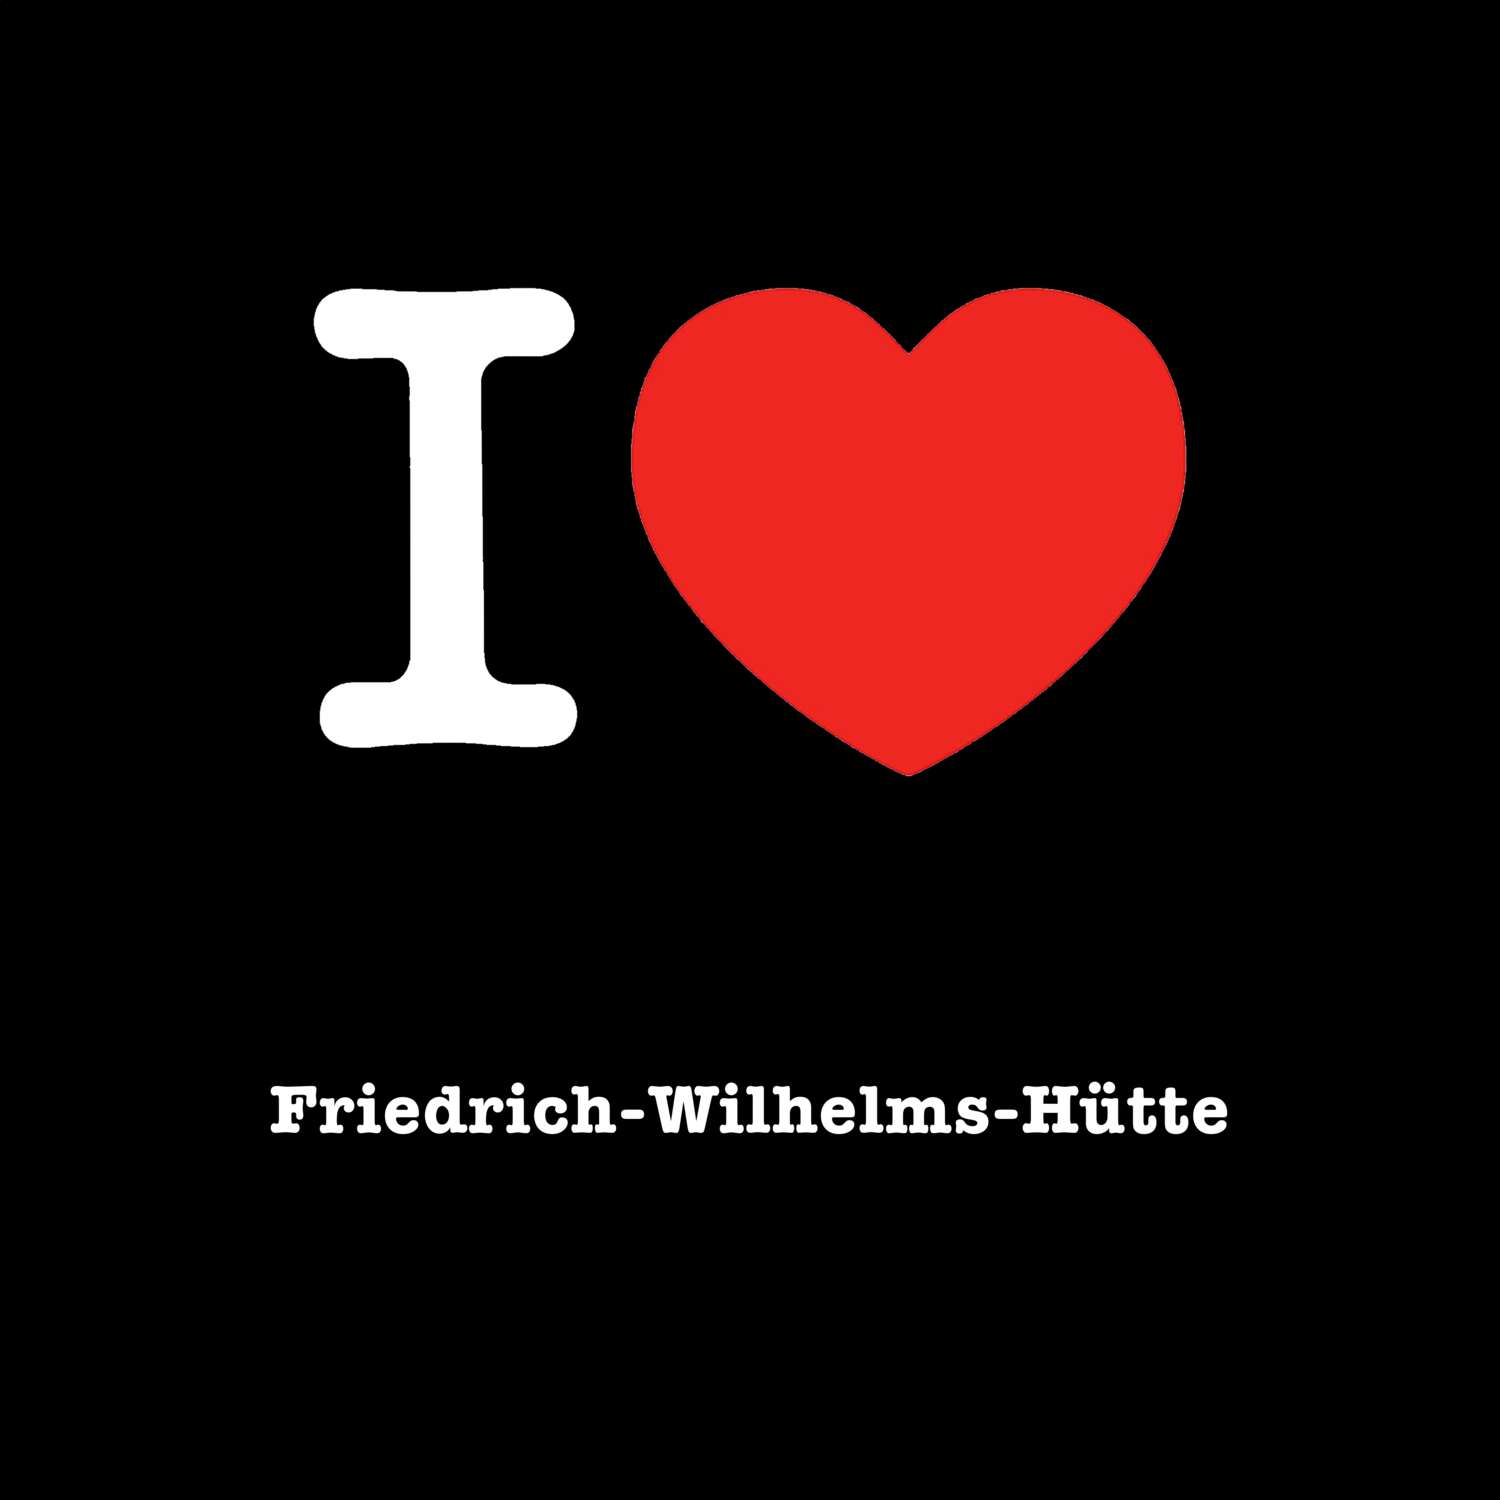 Friedrich-Wilhelms-Hütte T-Shirt »I love«